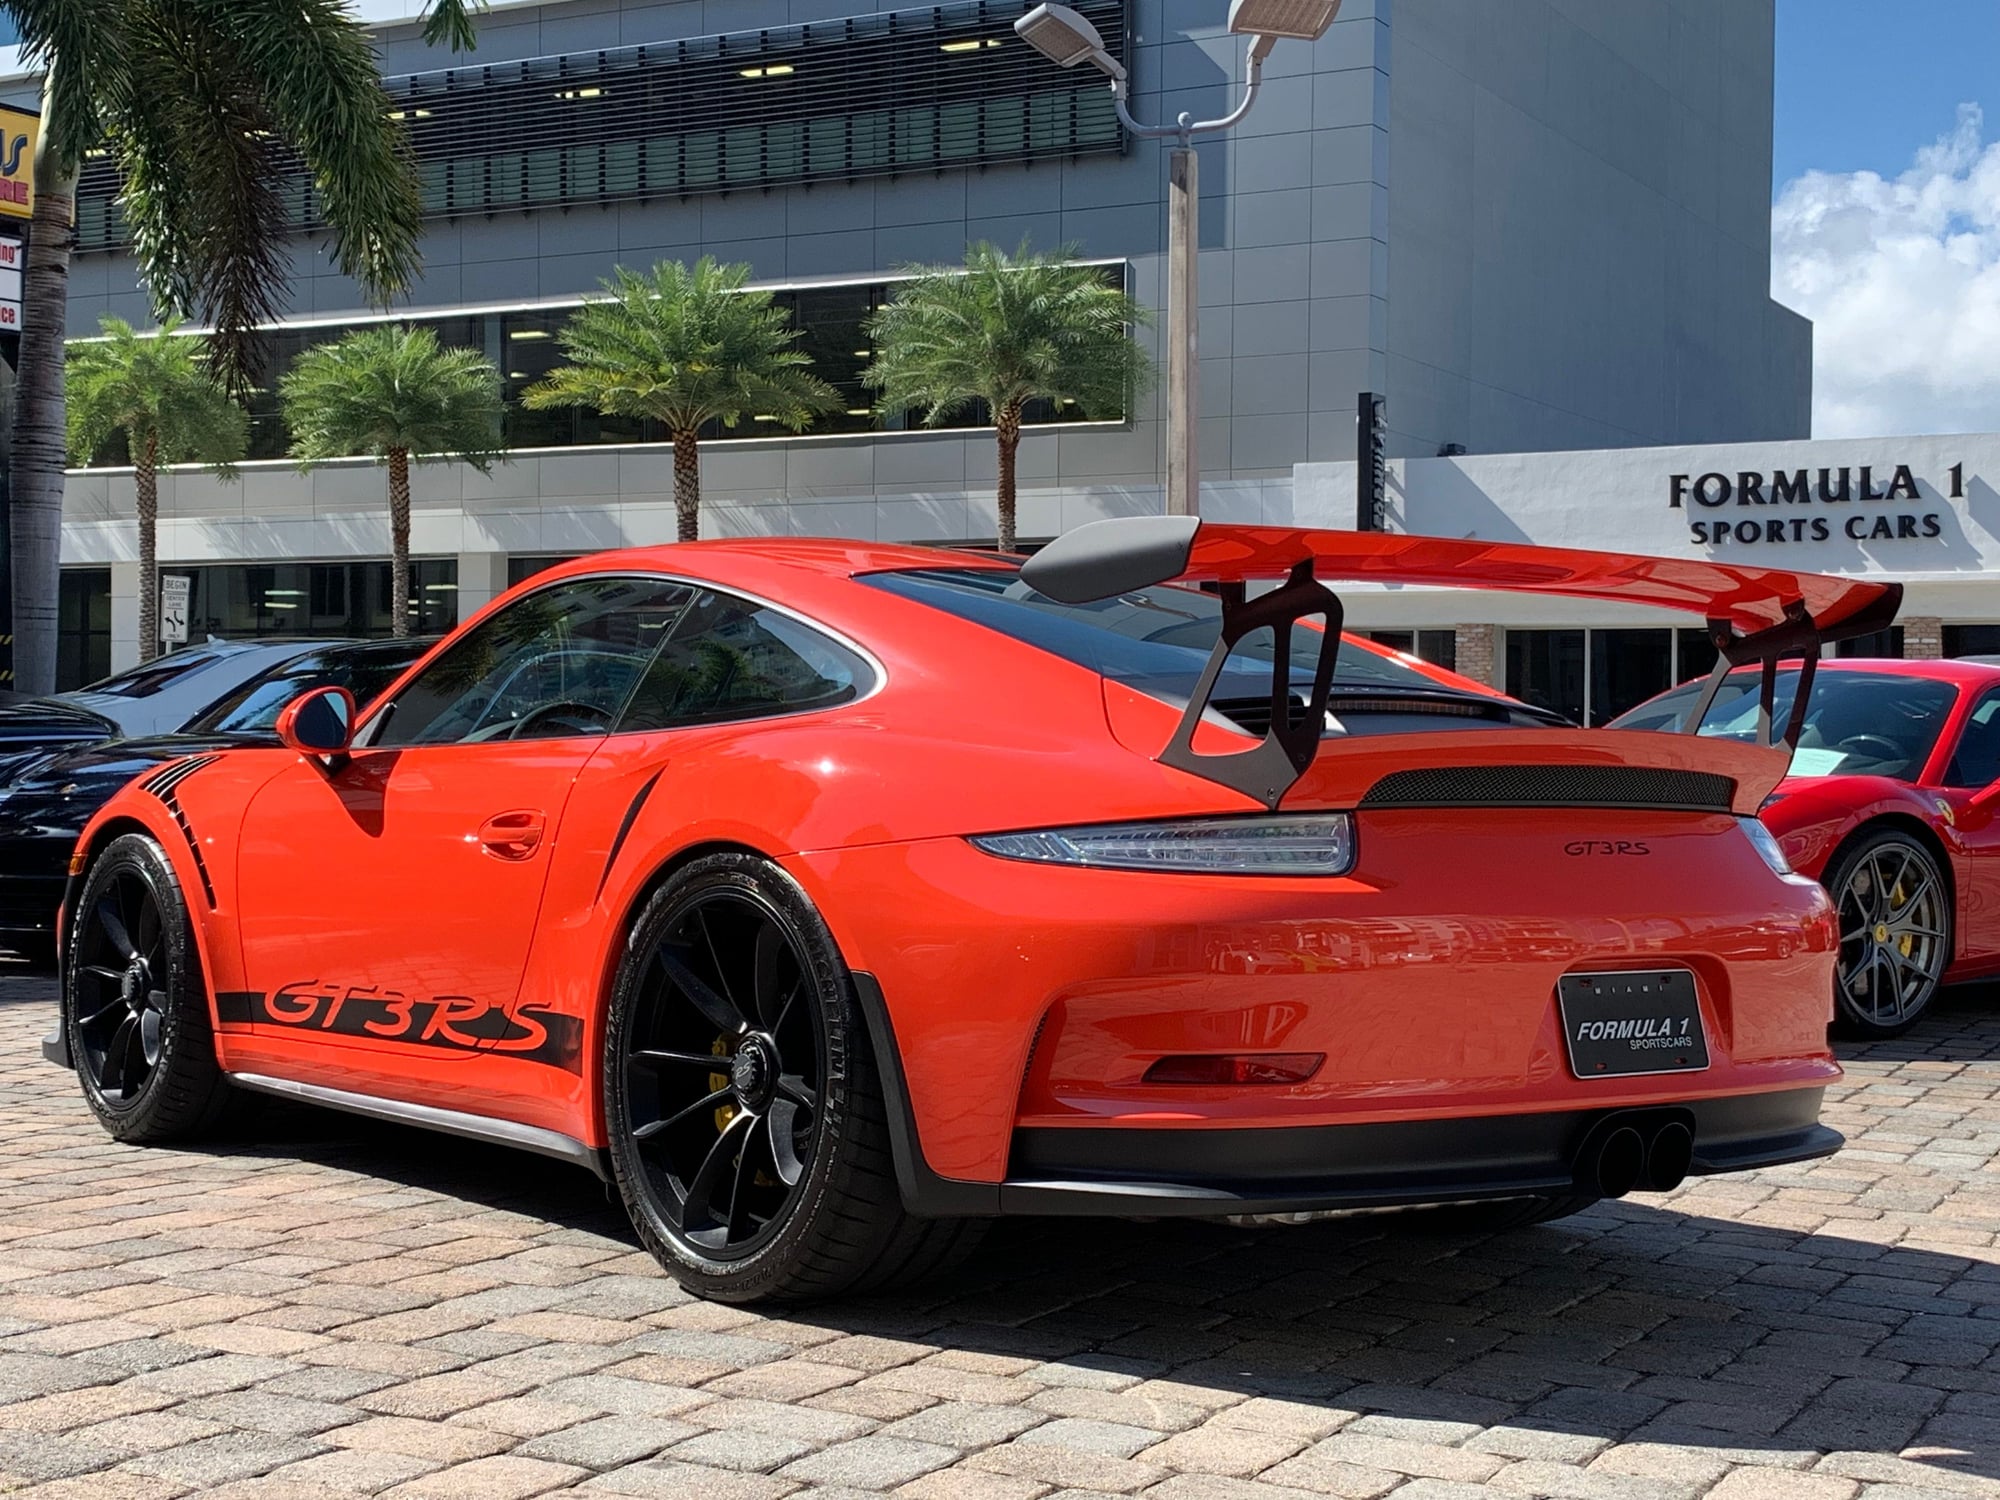 2016 Porsche GT3 - 2016 Lava Orange Porsche 911 GT3RS - Used - VIN WP0AF2A96GS192390 - 820 Miles - 6 cyl - 2WD - Automatic - Coupe - Orange - Miami, FL 33146, United States